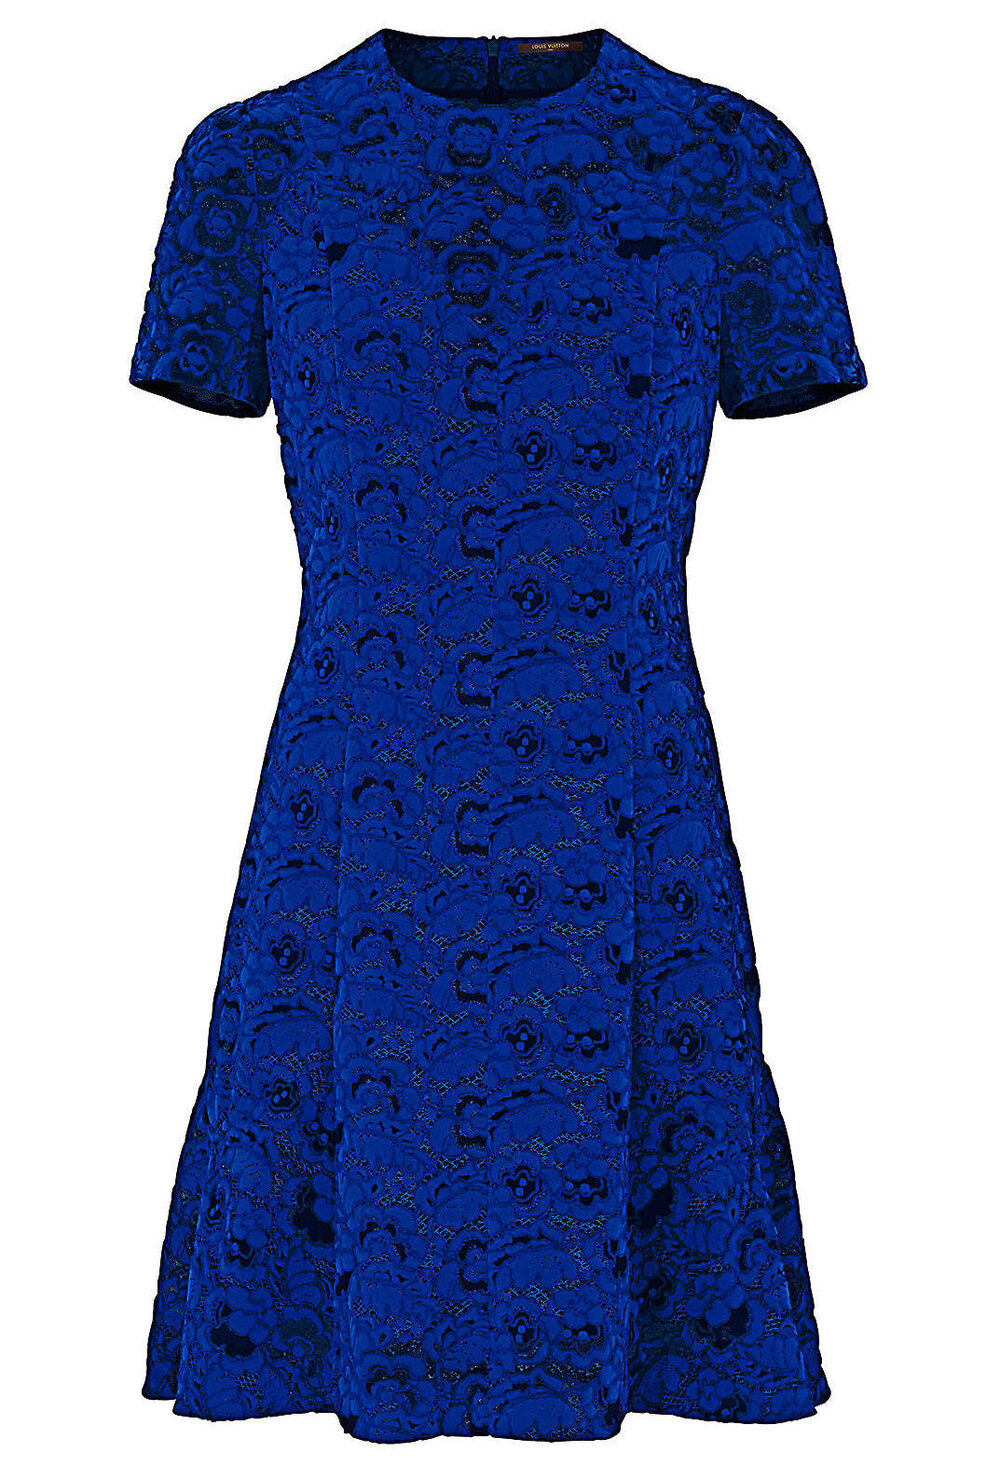 vuitton blue dress